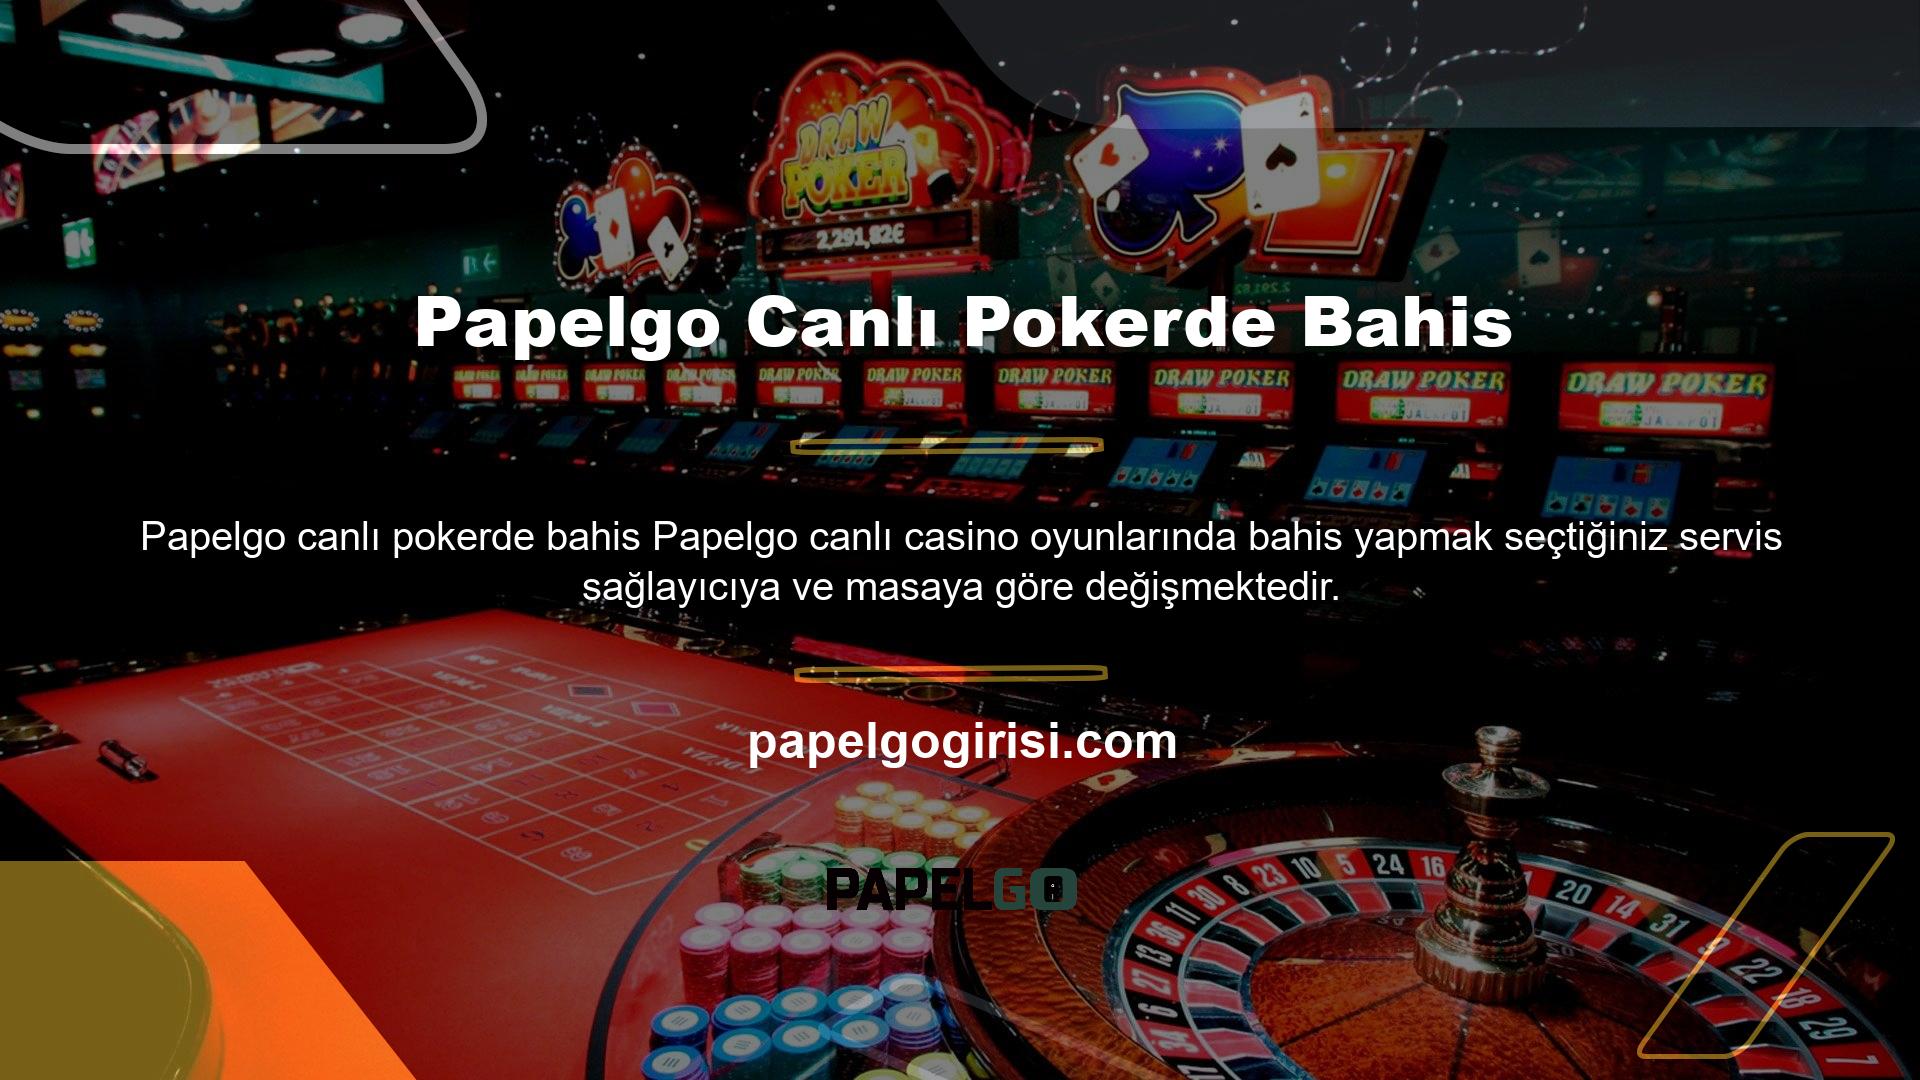 Papelgo Canlı Casino masasında krupiyerlerin konuştuğu dil hakkında bilgiye masa fotoğrafının sol üst köşesindeki bayrağa bakarak ulaşabilirsiniz